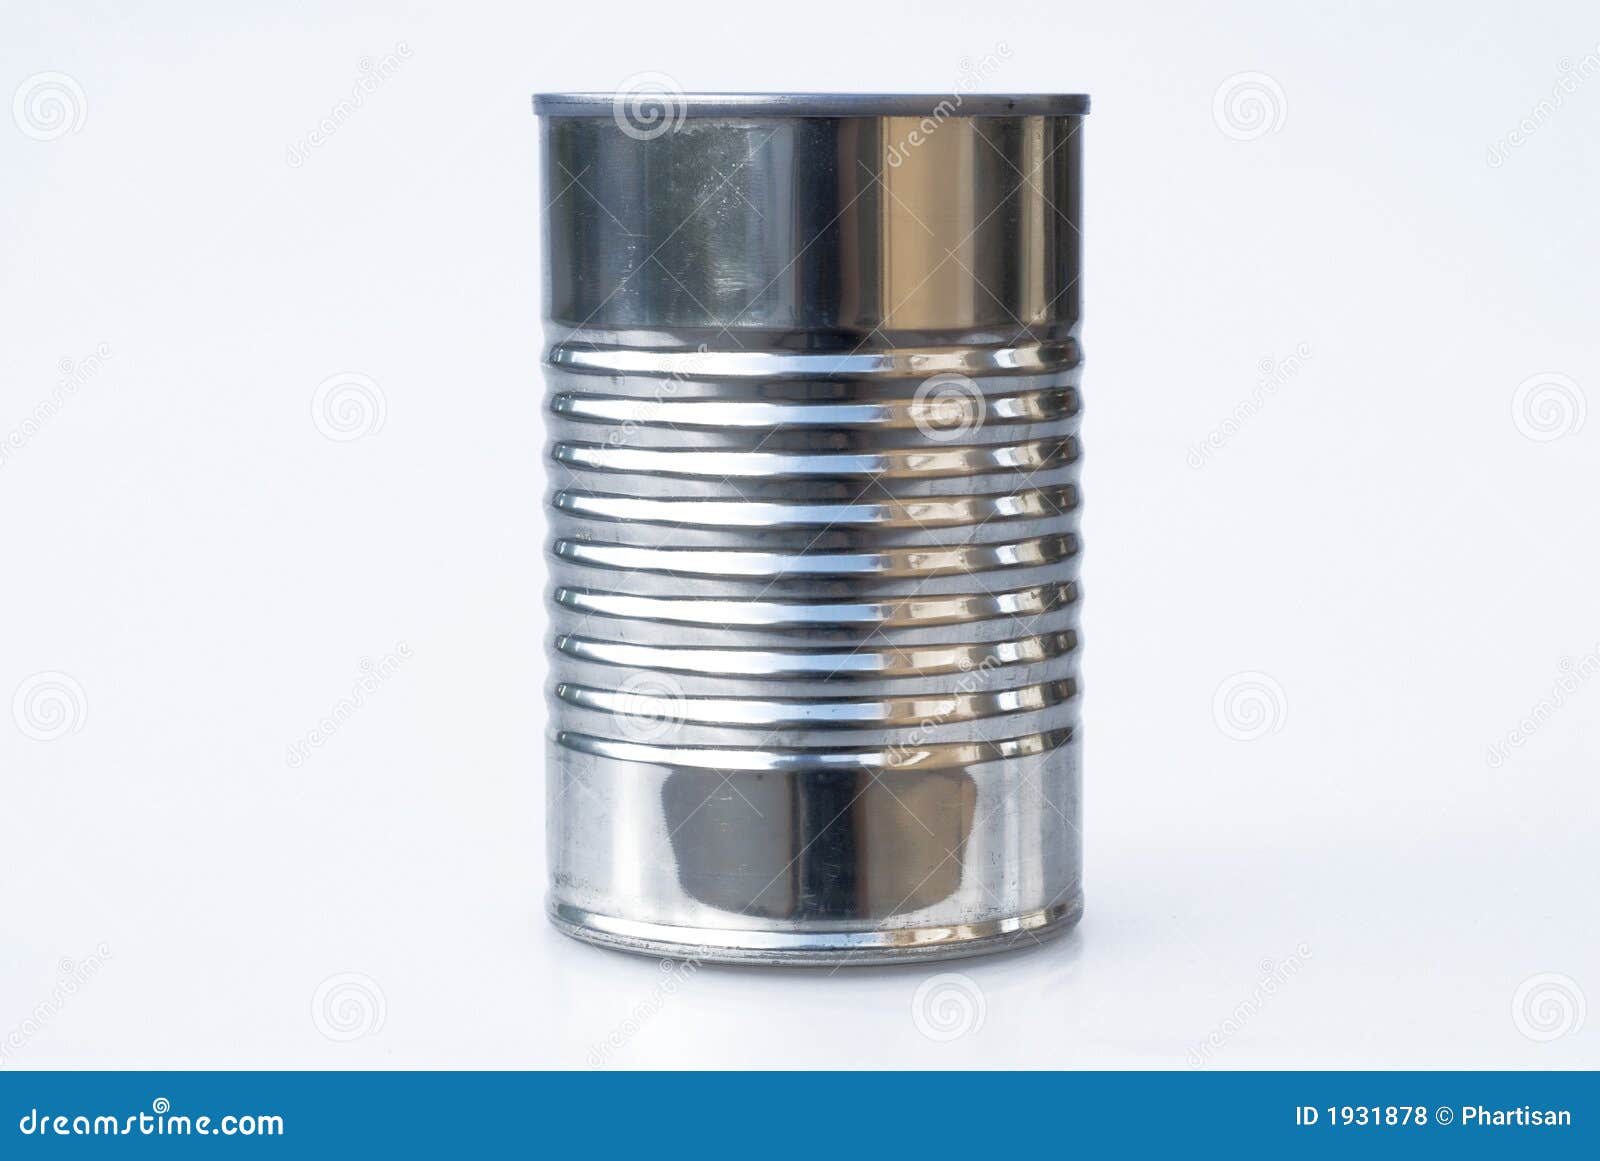 steel tin can